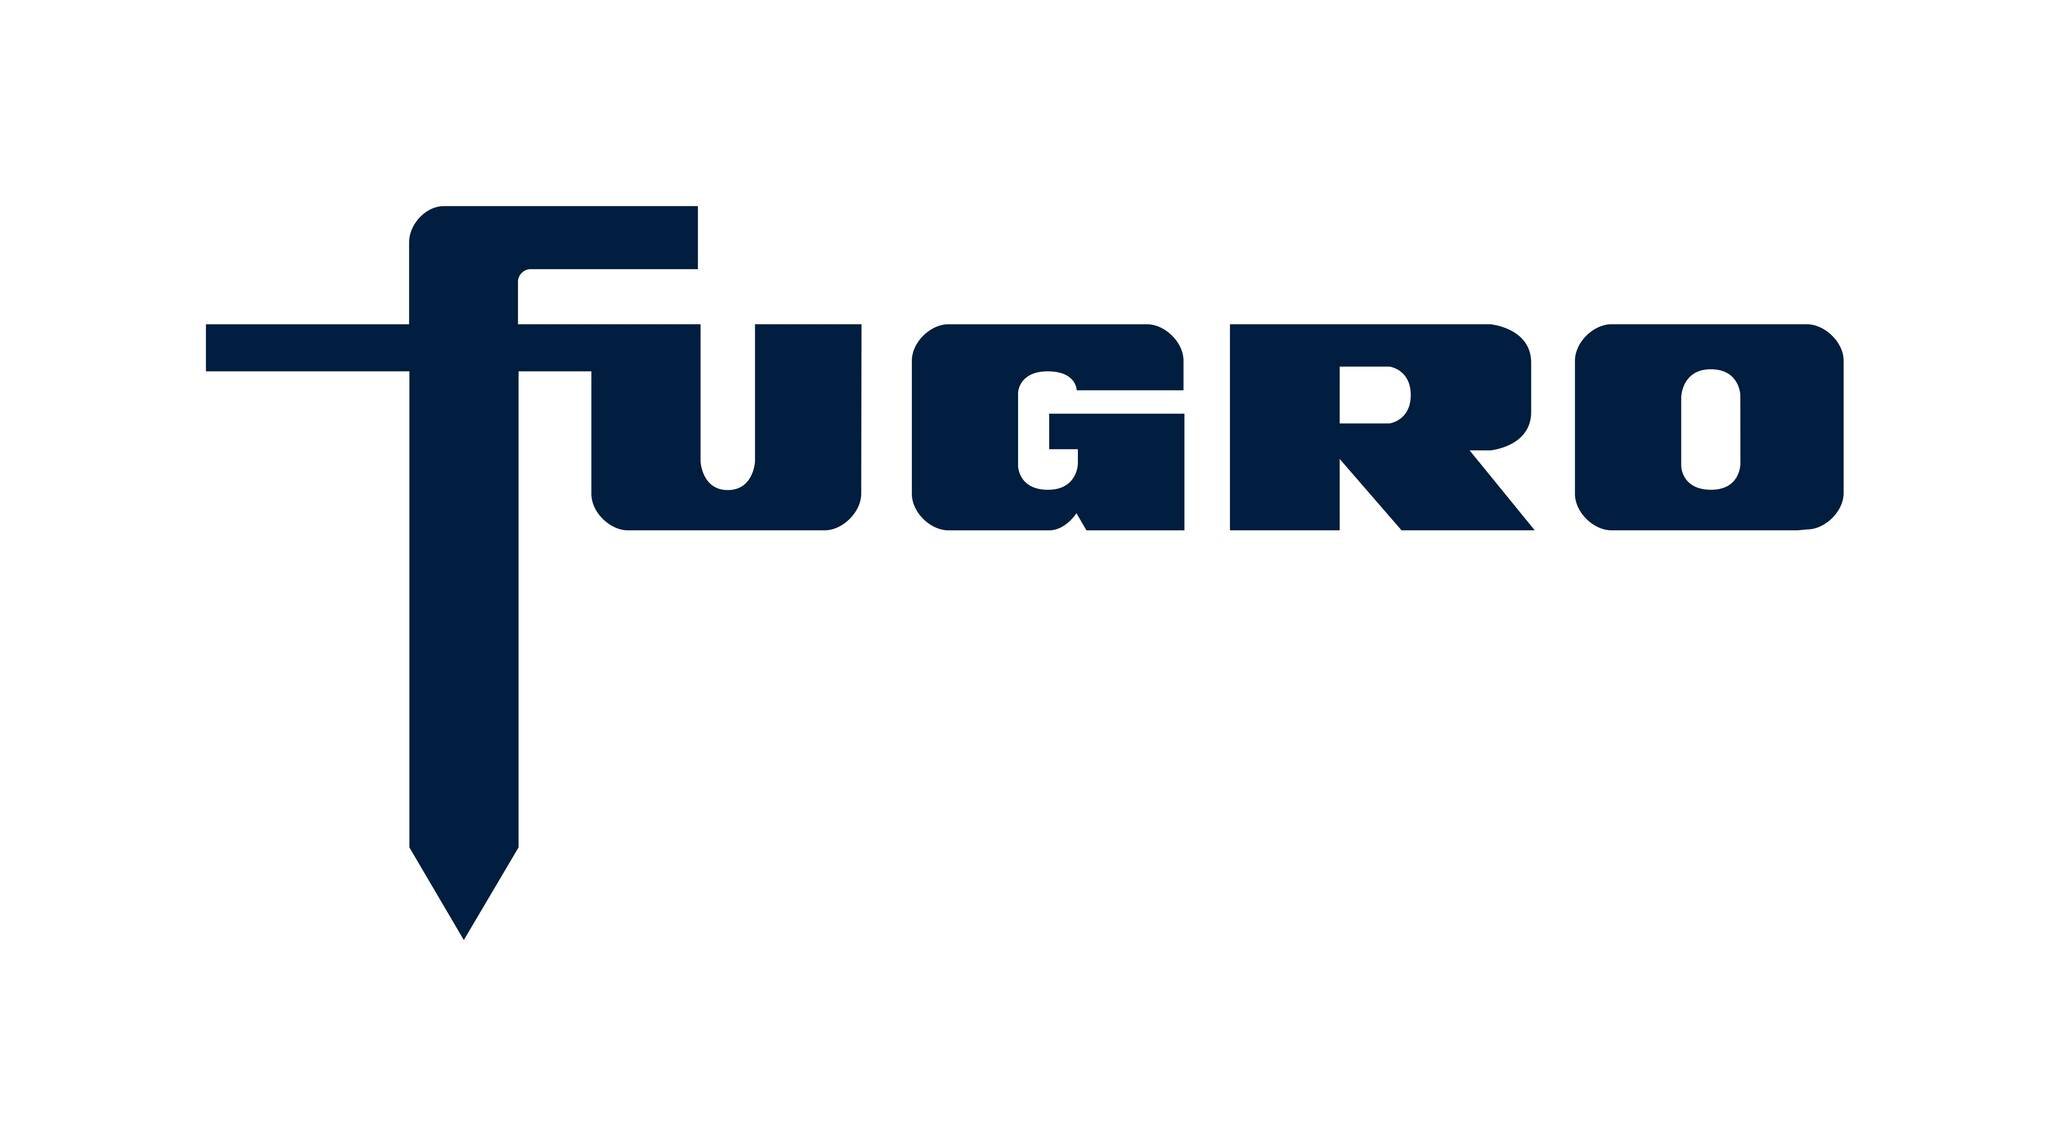 Fugro logo
Quantum Blue, RGB, raster